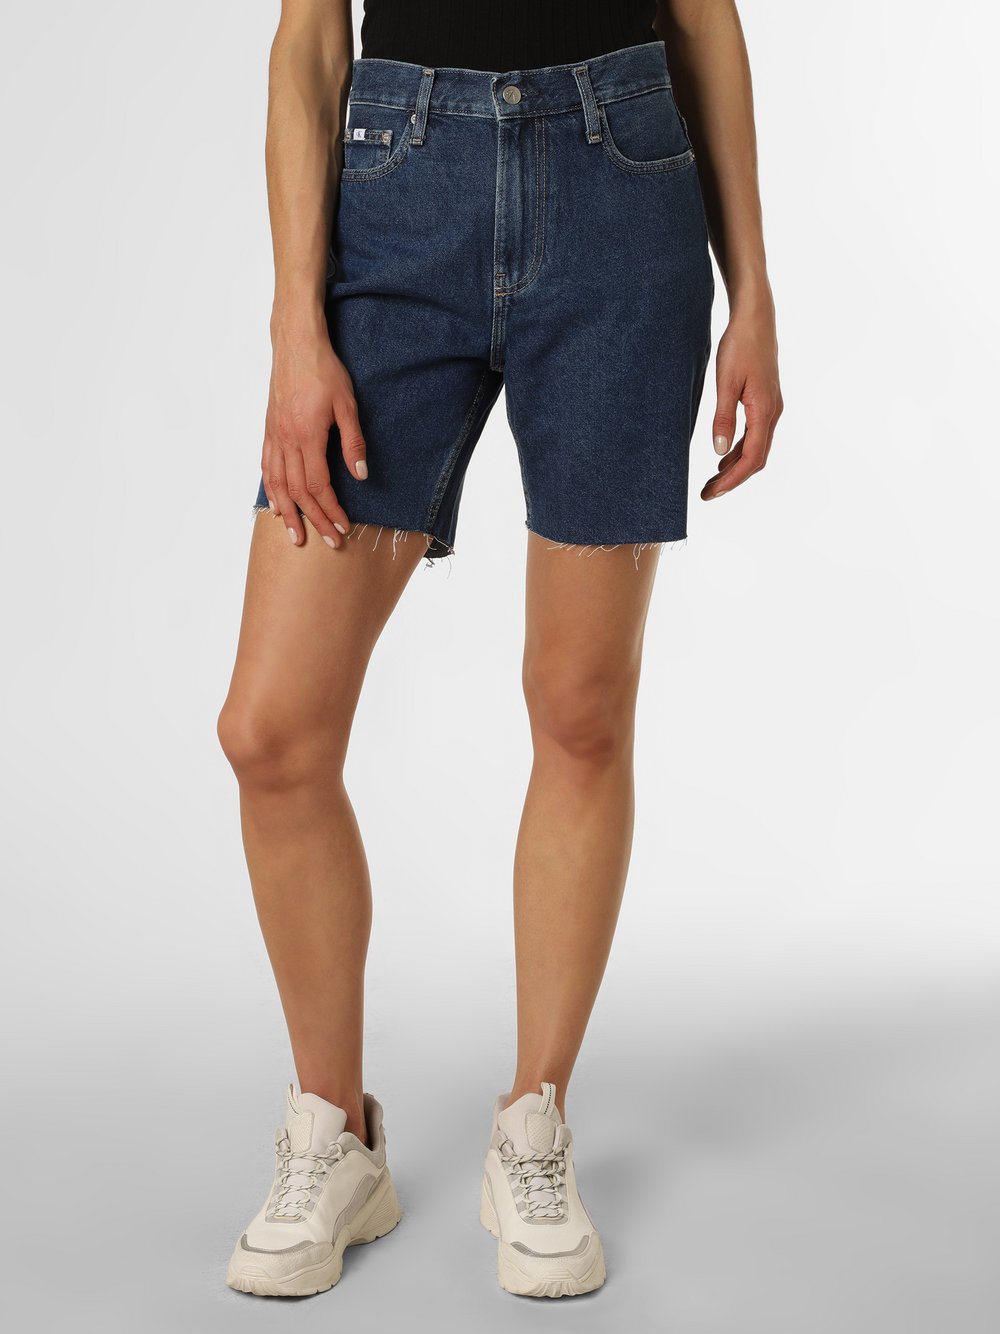 Calvin Klein Jeans - Damskie spodenki jeansowe, niebieski